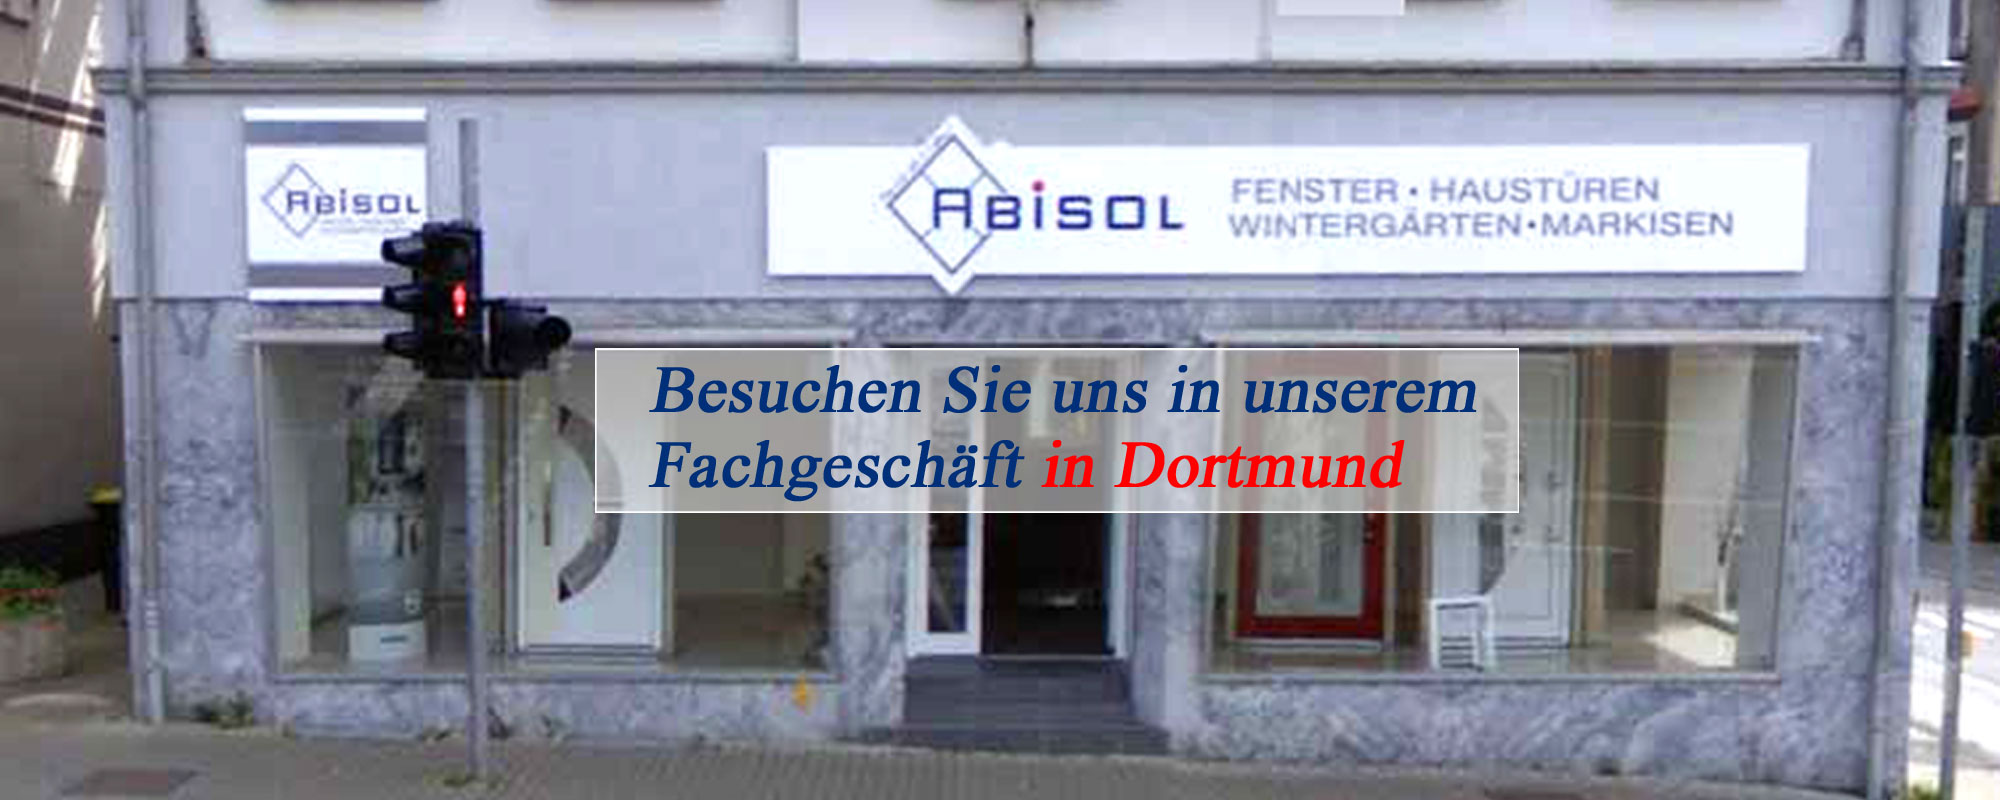 Bild 5 Abisol GmbH in Dortmund